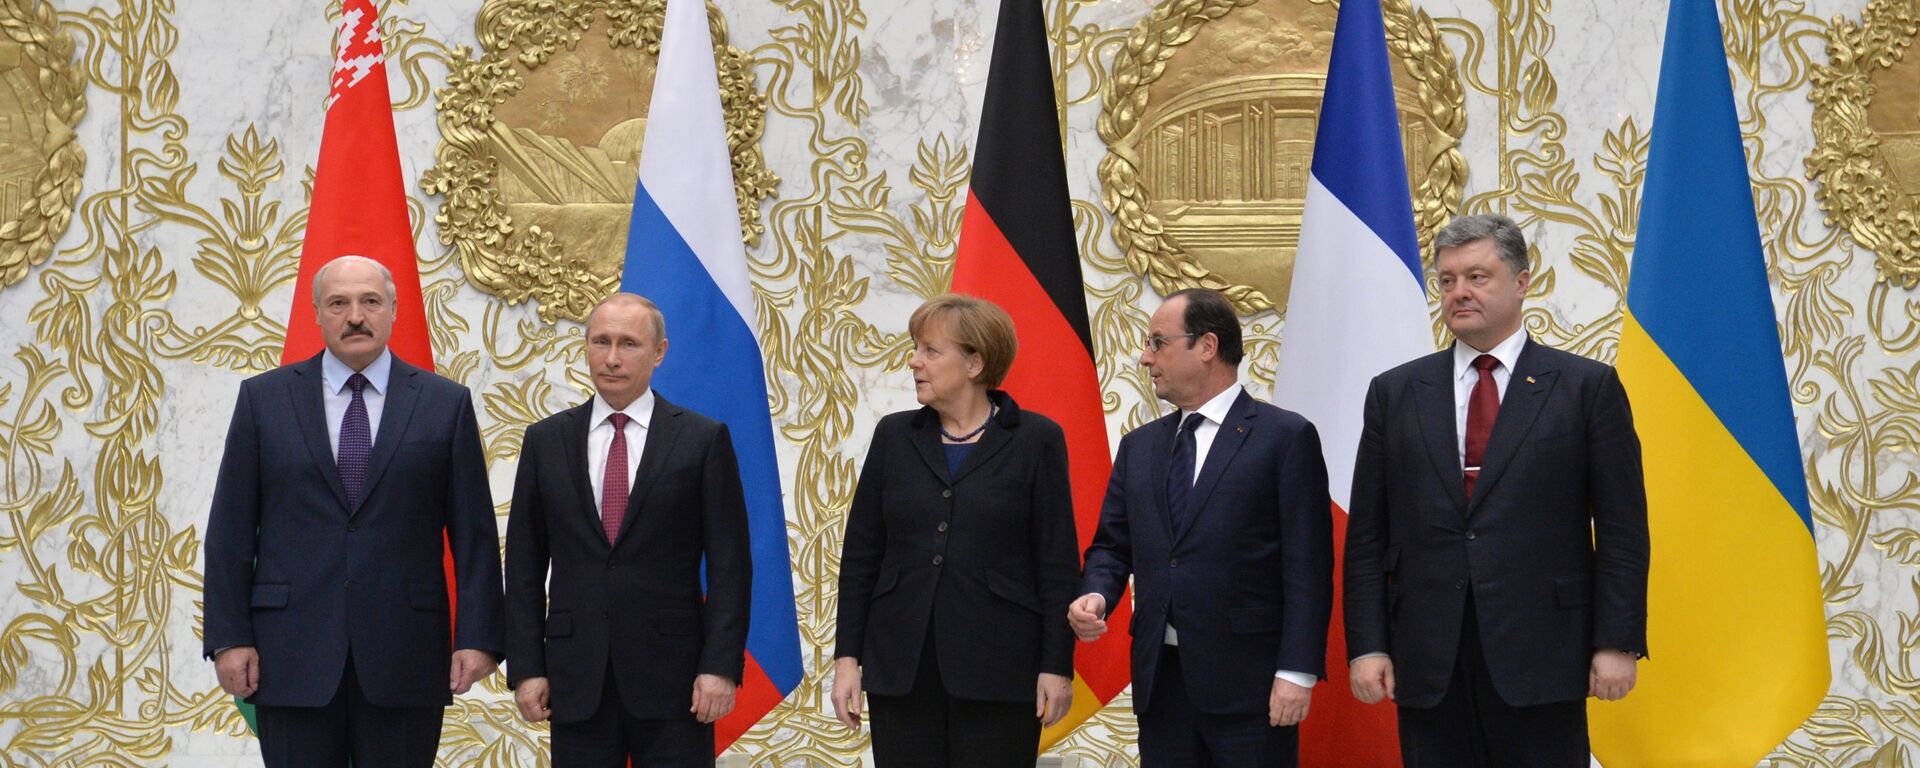 Переговоры лидеров России, Германии, Франции и Украины в Минске - Sputnik Ўзбекистон, 1920, 19.02.2020